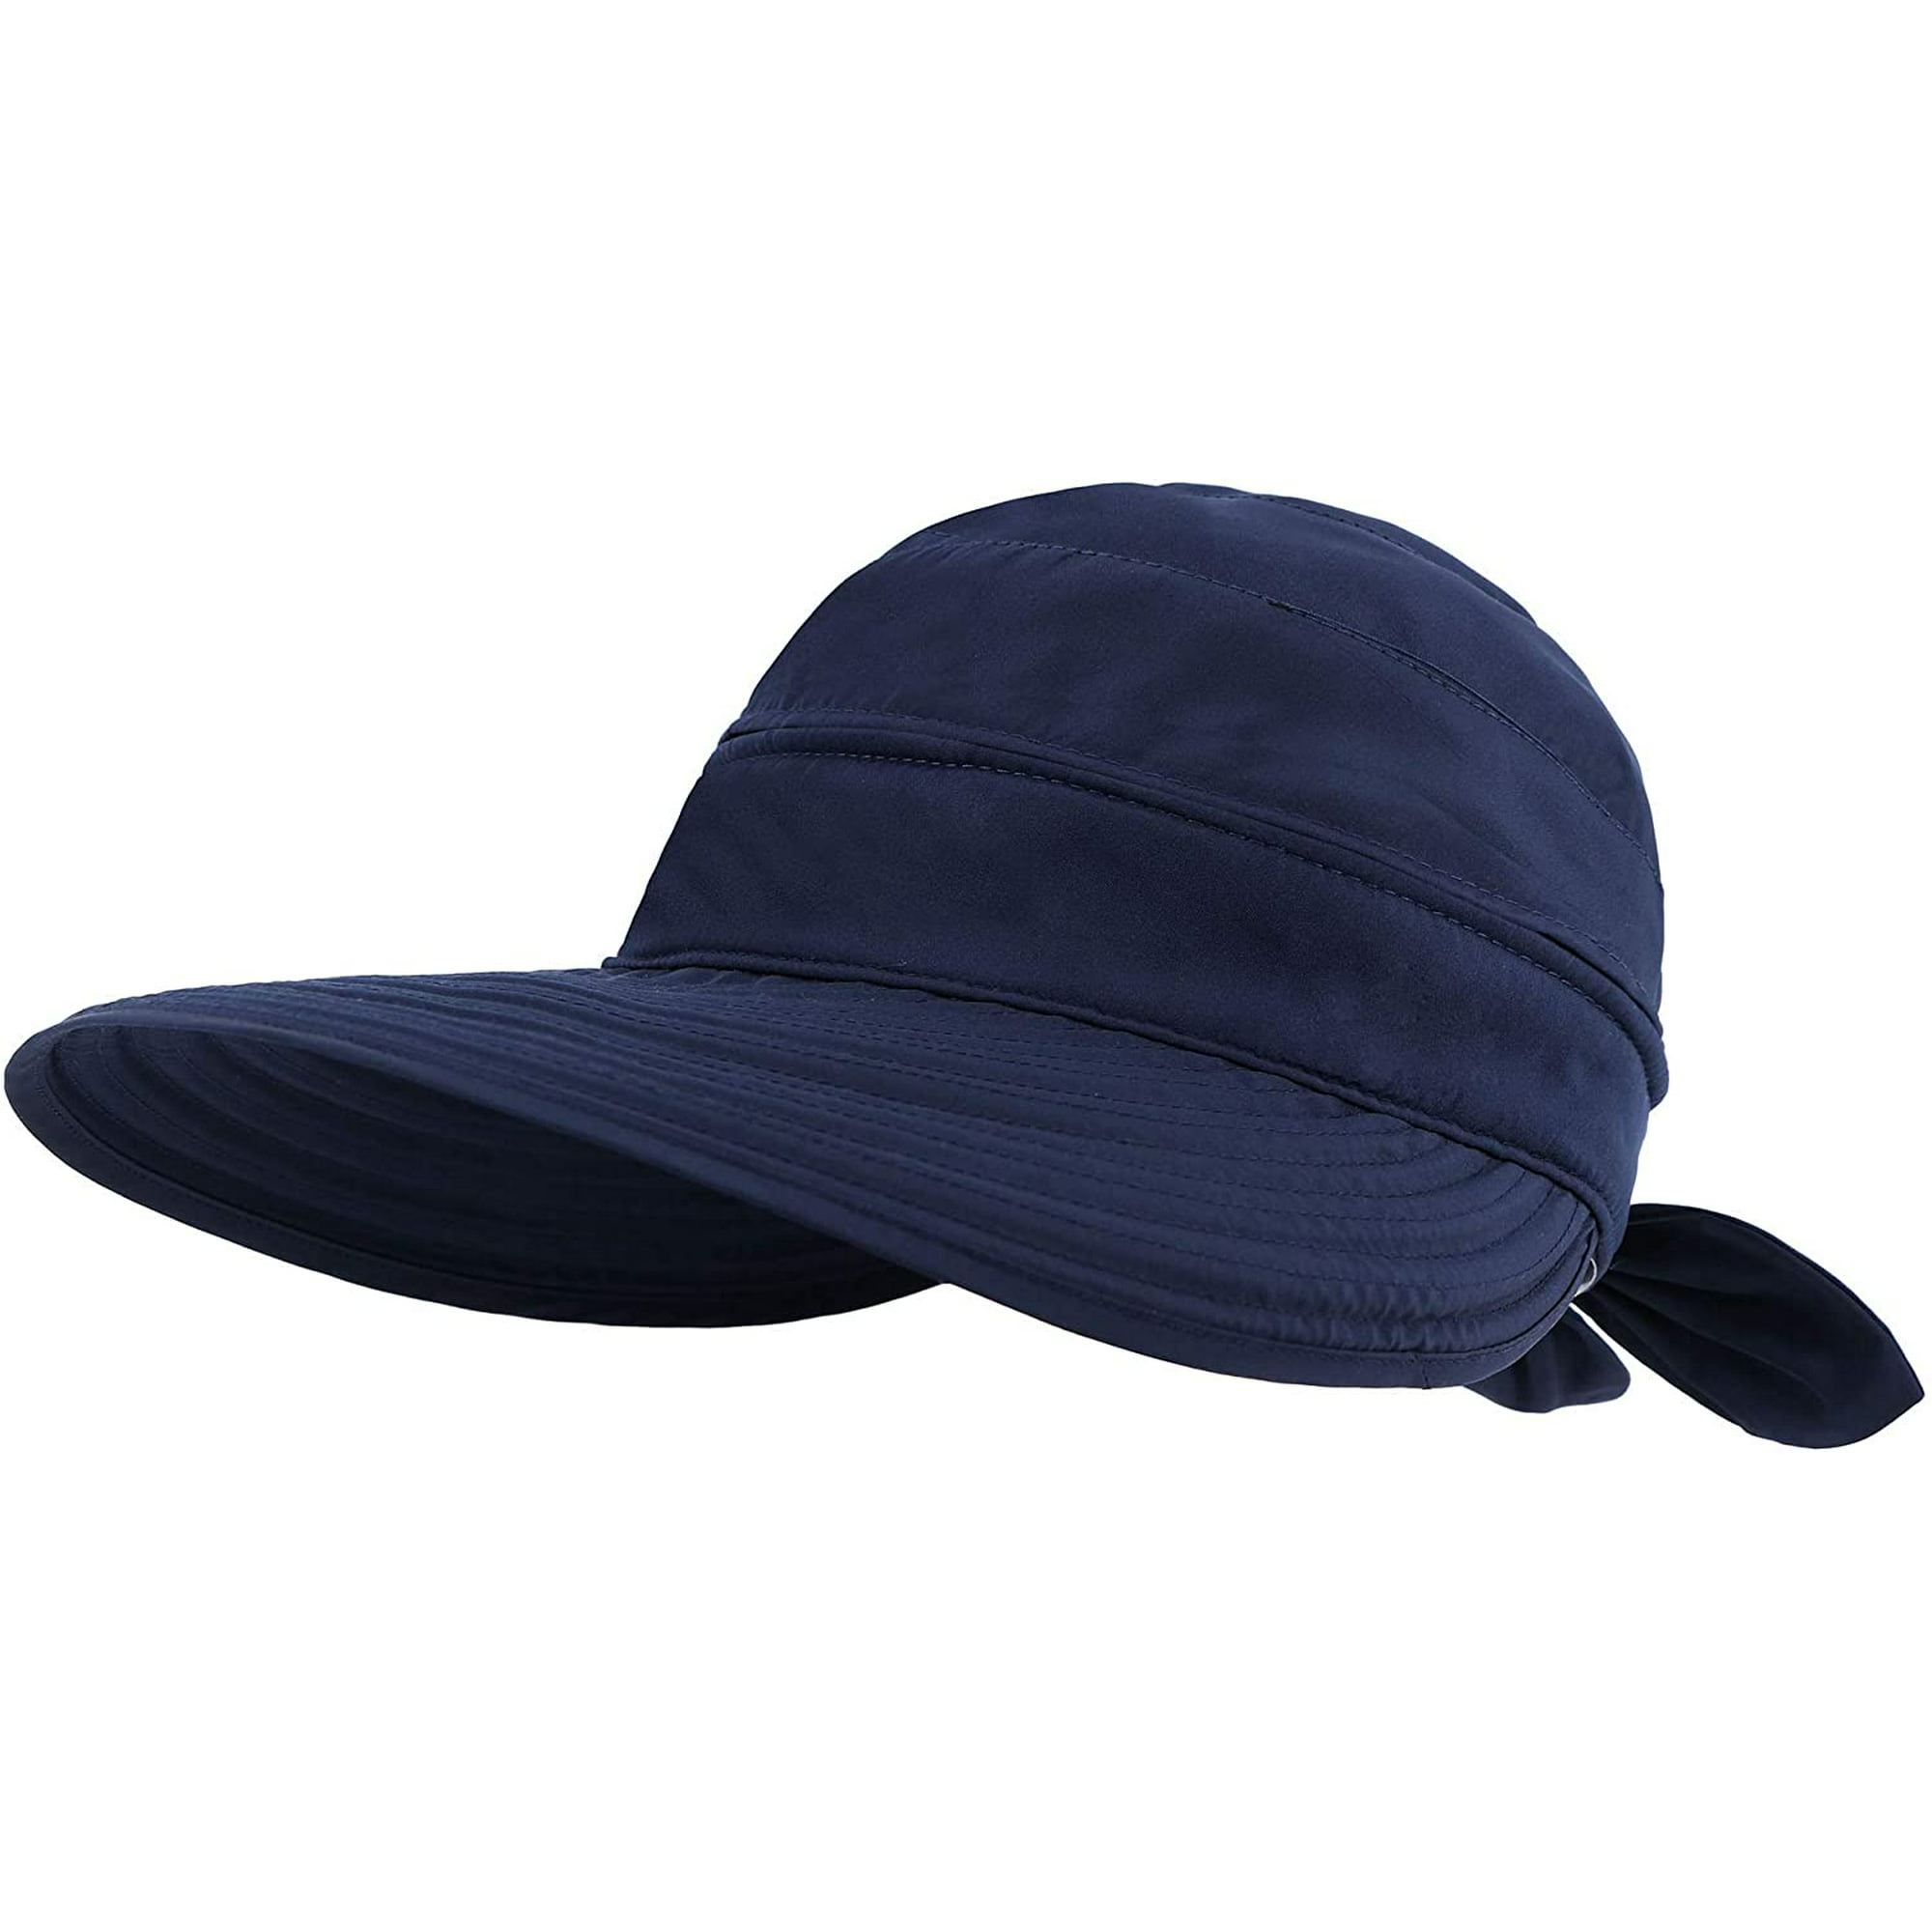 Sombreros para mujer UPF 50+ UV protección solar convertible Zhivalor  Lentes de Sol Unisex